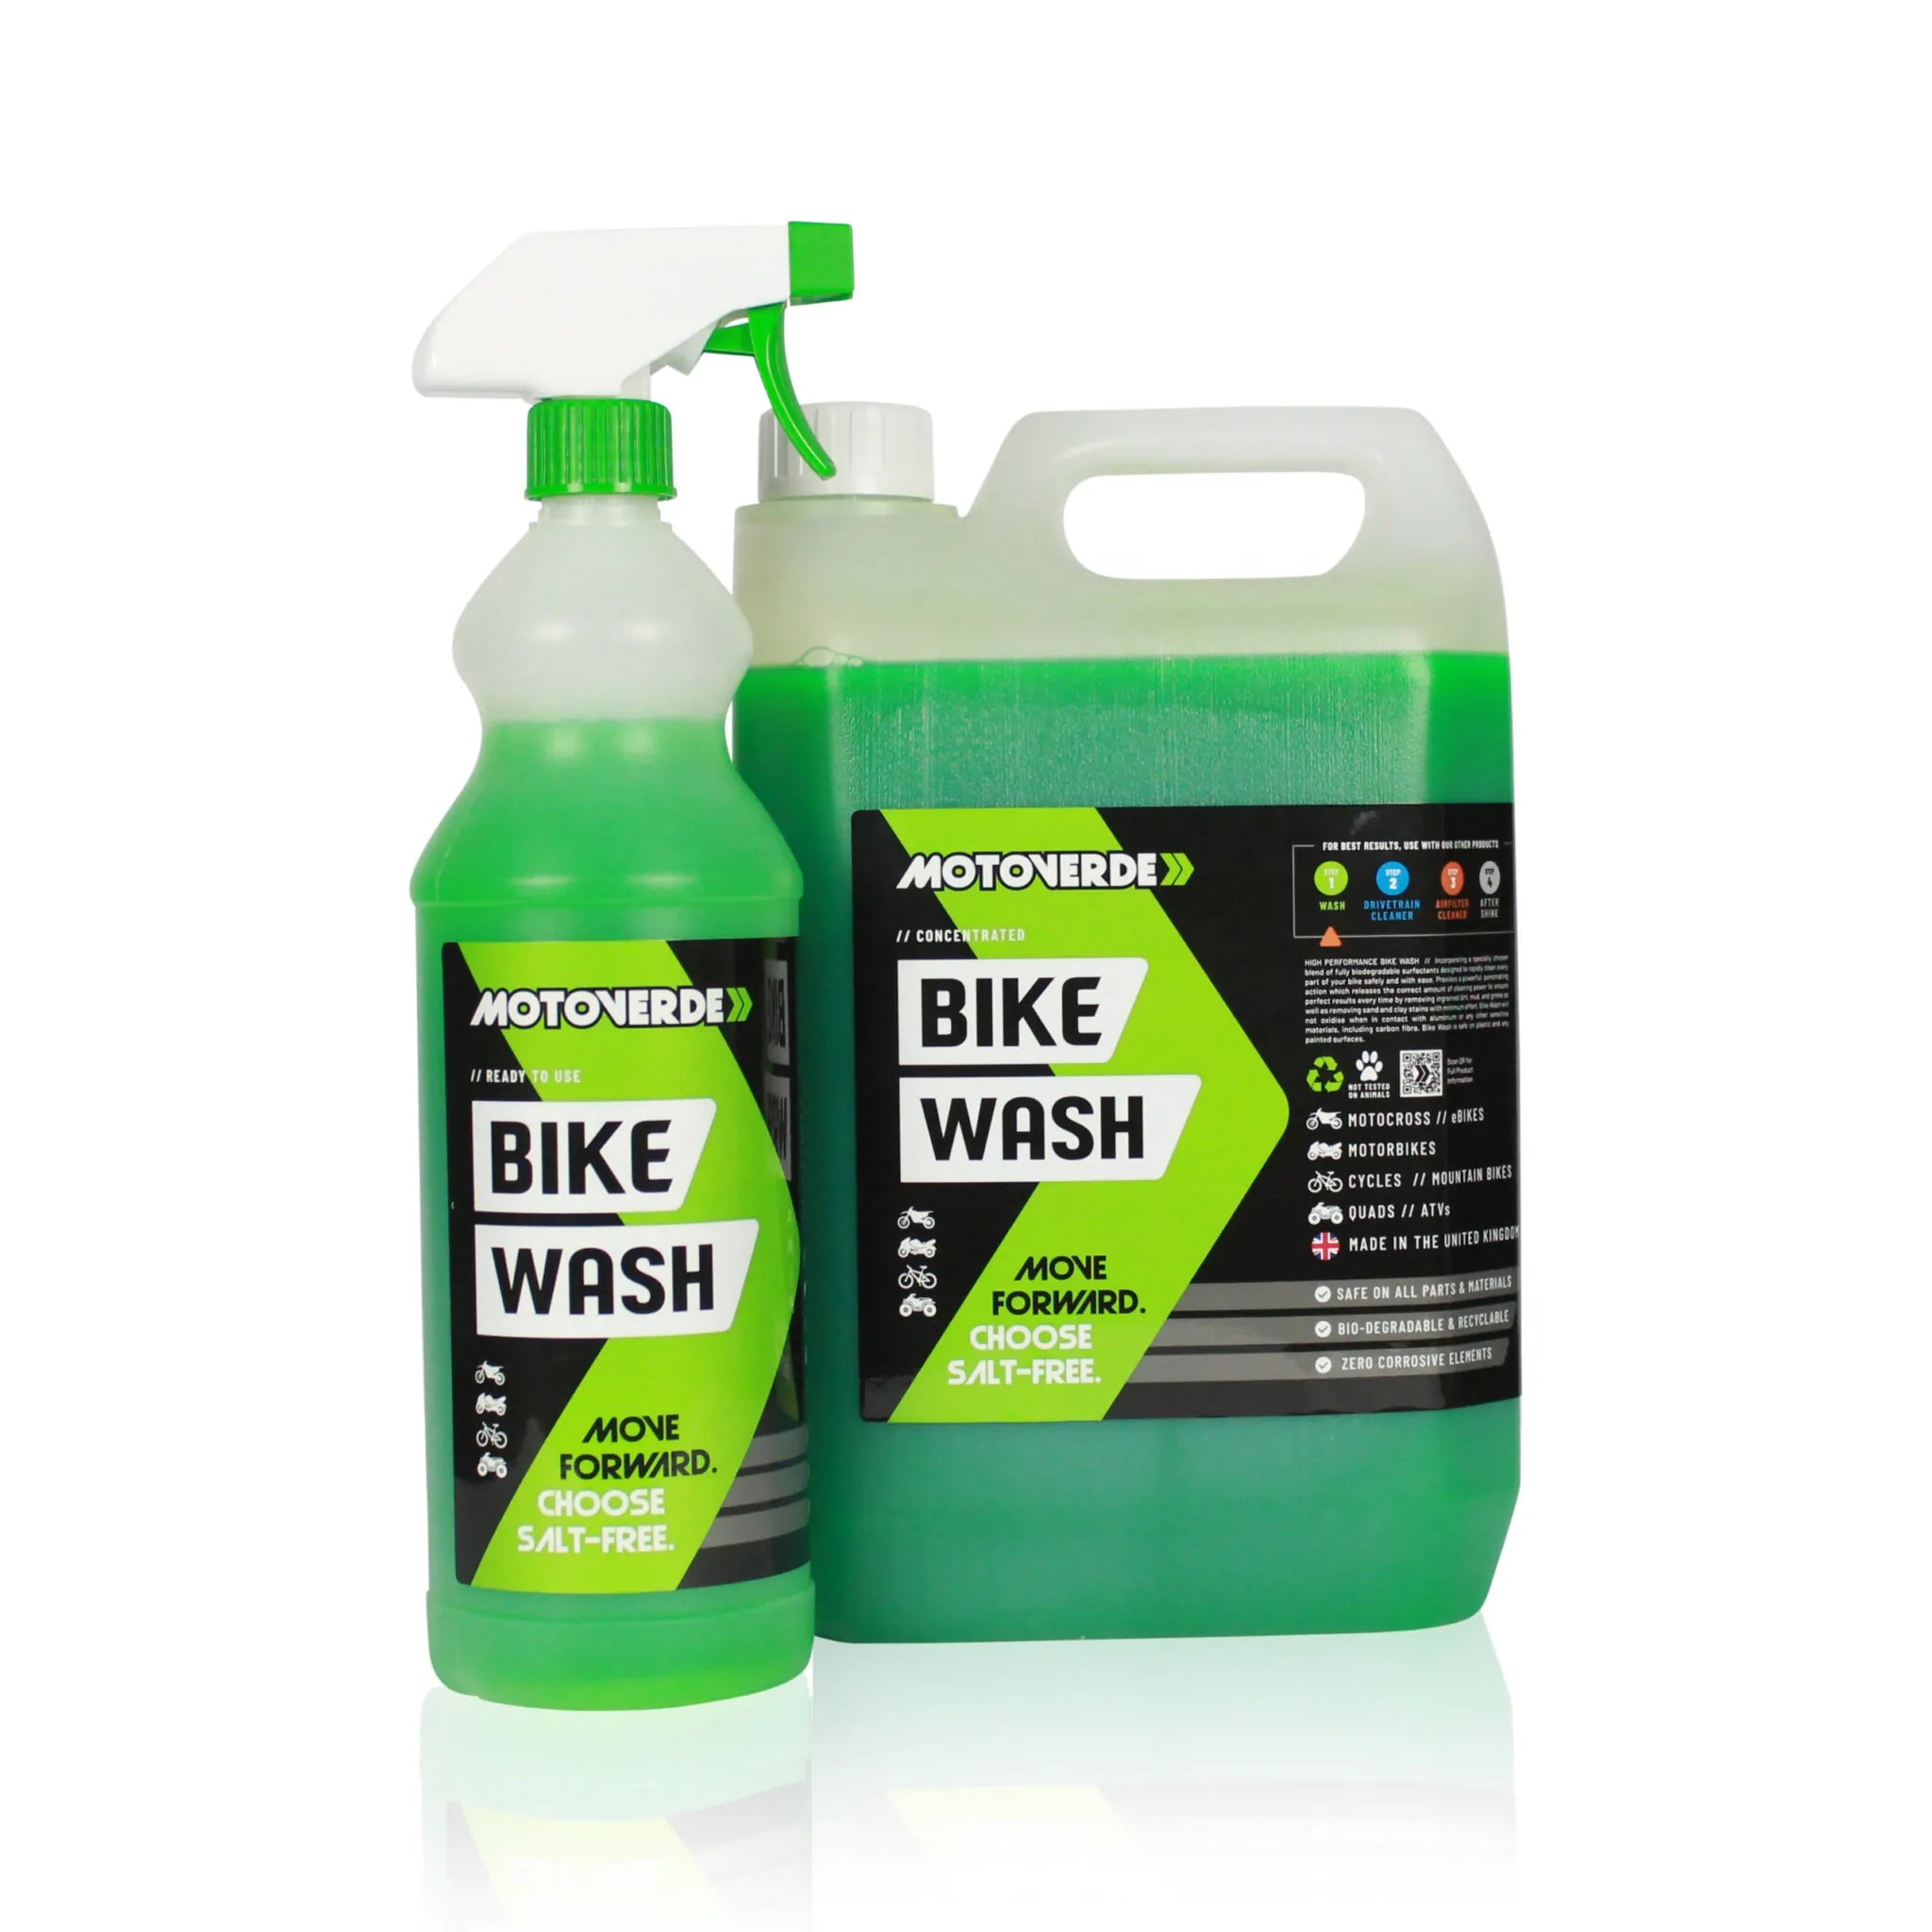 Motoverde Bike Wash 5 Litre Concentrate + 1 Litre Cleaner